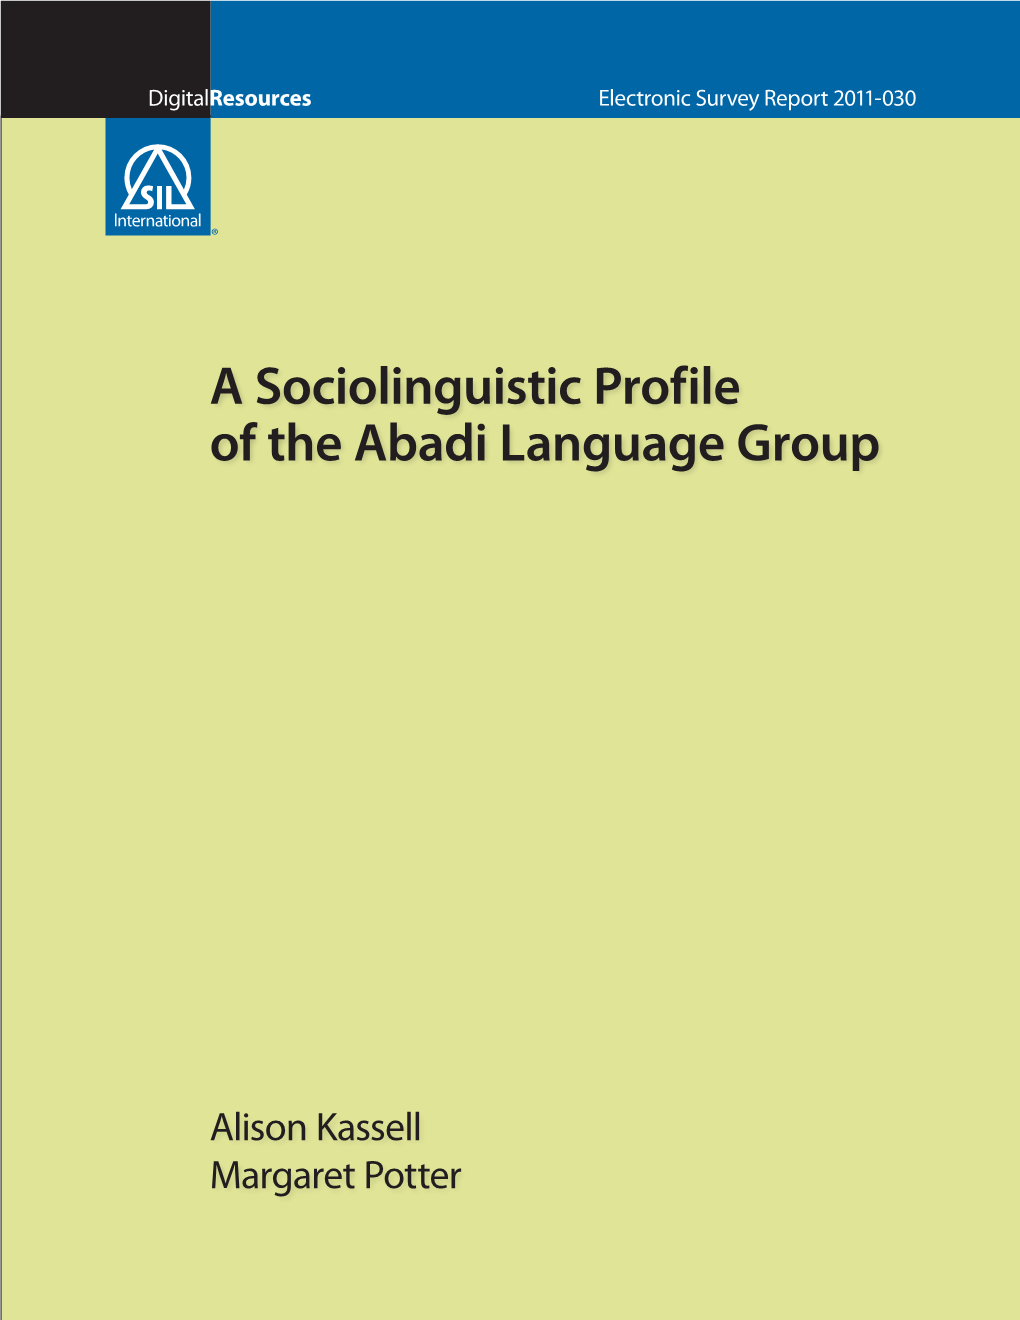 A Sociolinguistic Profile of the Abadi Language Group